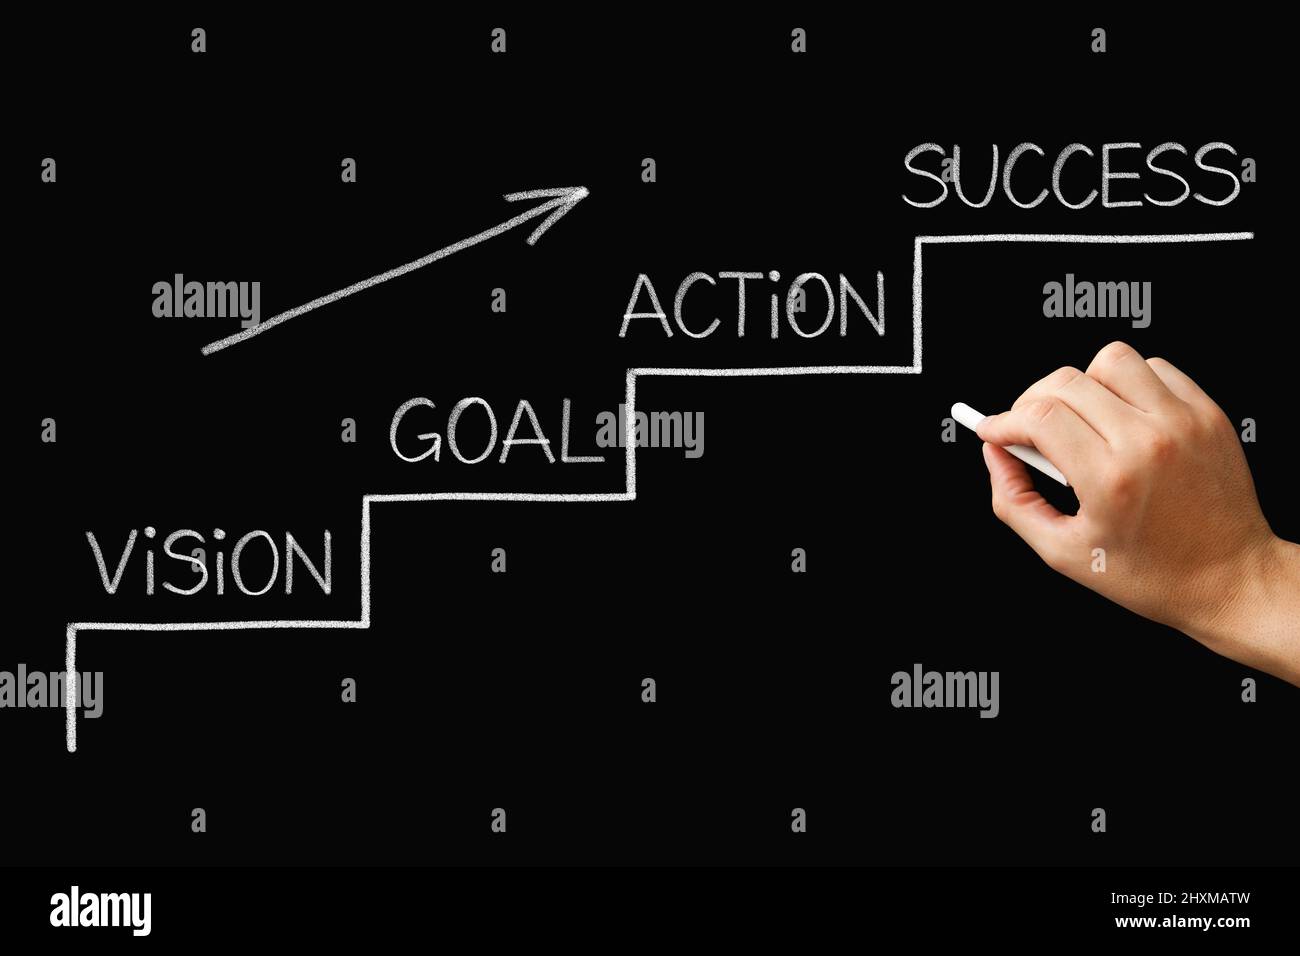 Hand zeichnen ein Treppenhaus zum Erfolg Konzept mit Schritten von der Vision über das Setzen von Zielen, Handeln und Erfolg zu erreichen. Stockfoto